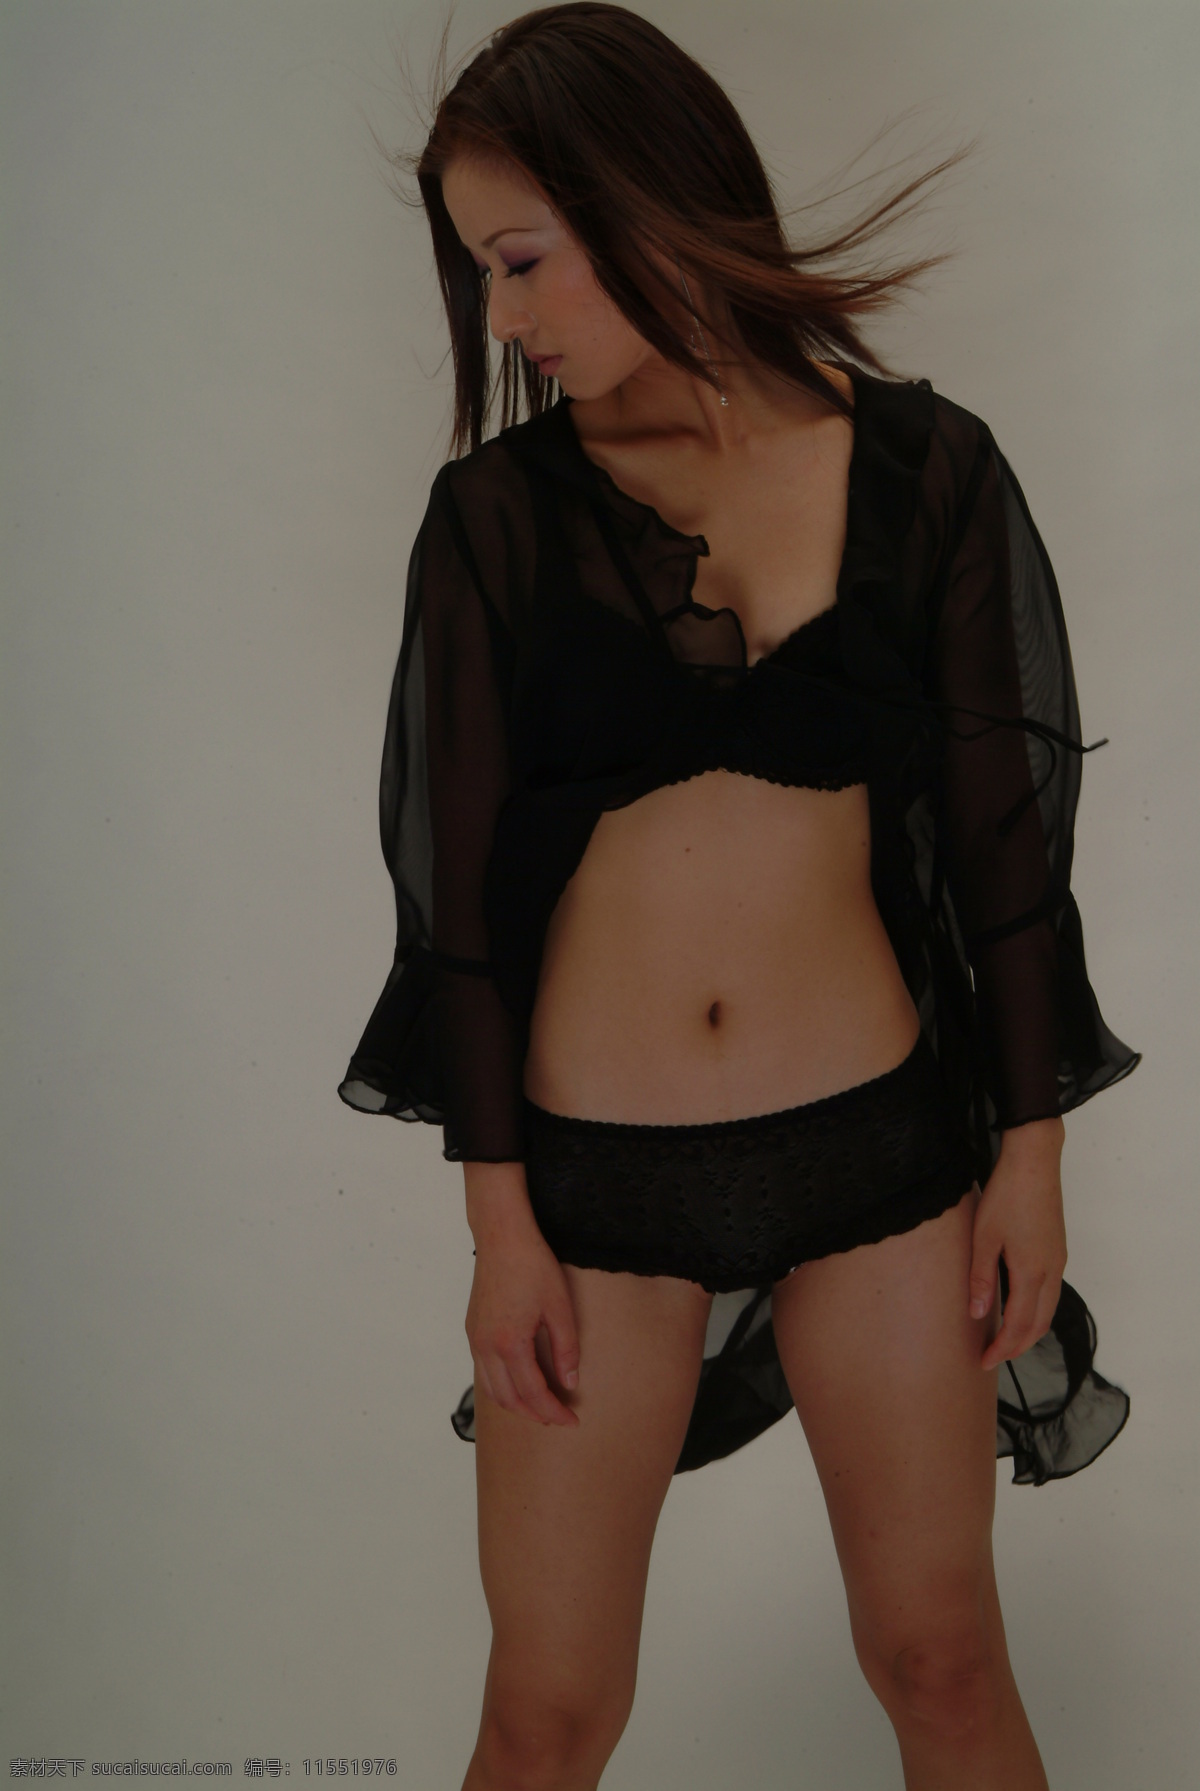 女人 写真 性感 室内 调色 美女 造型 黑裙 个性 模特 平面模特 曲线 内衣 女性女人 人物图库